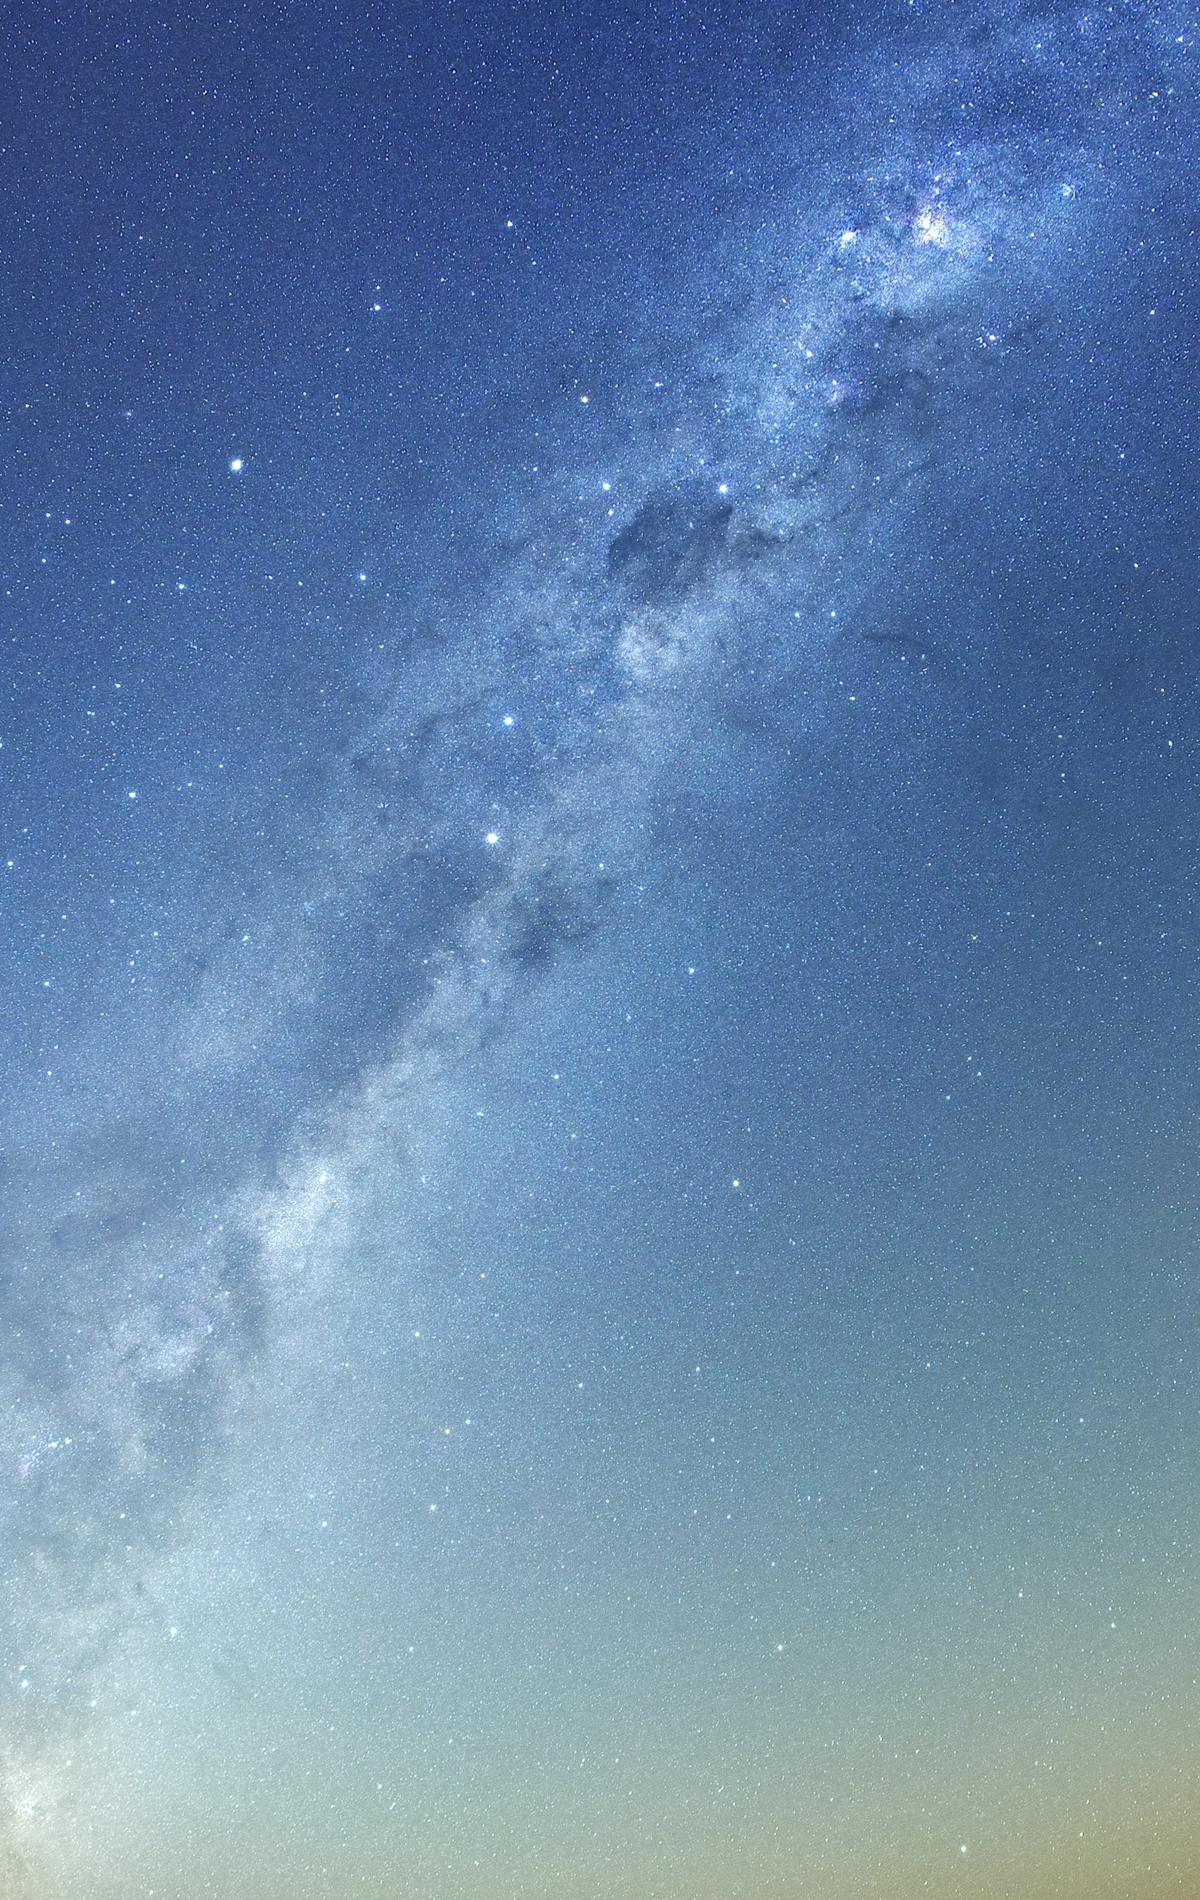 Картинка: Небо, космос, звёзды, млечный путь, гало, малое, большое, Магеллановы облака